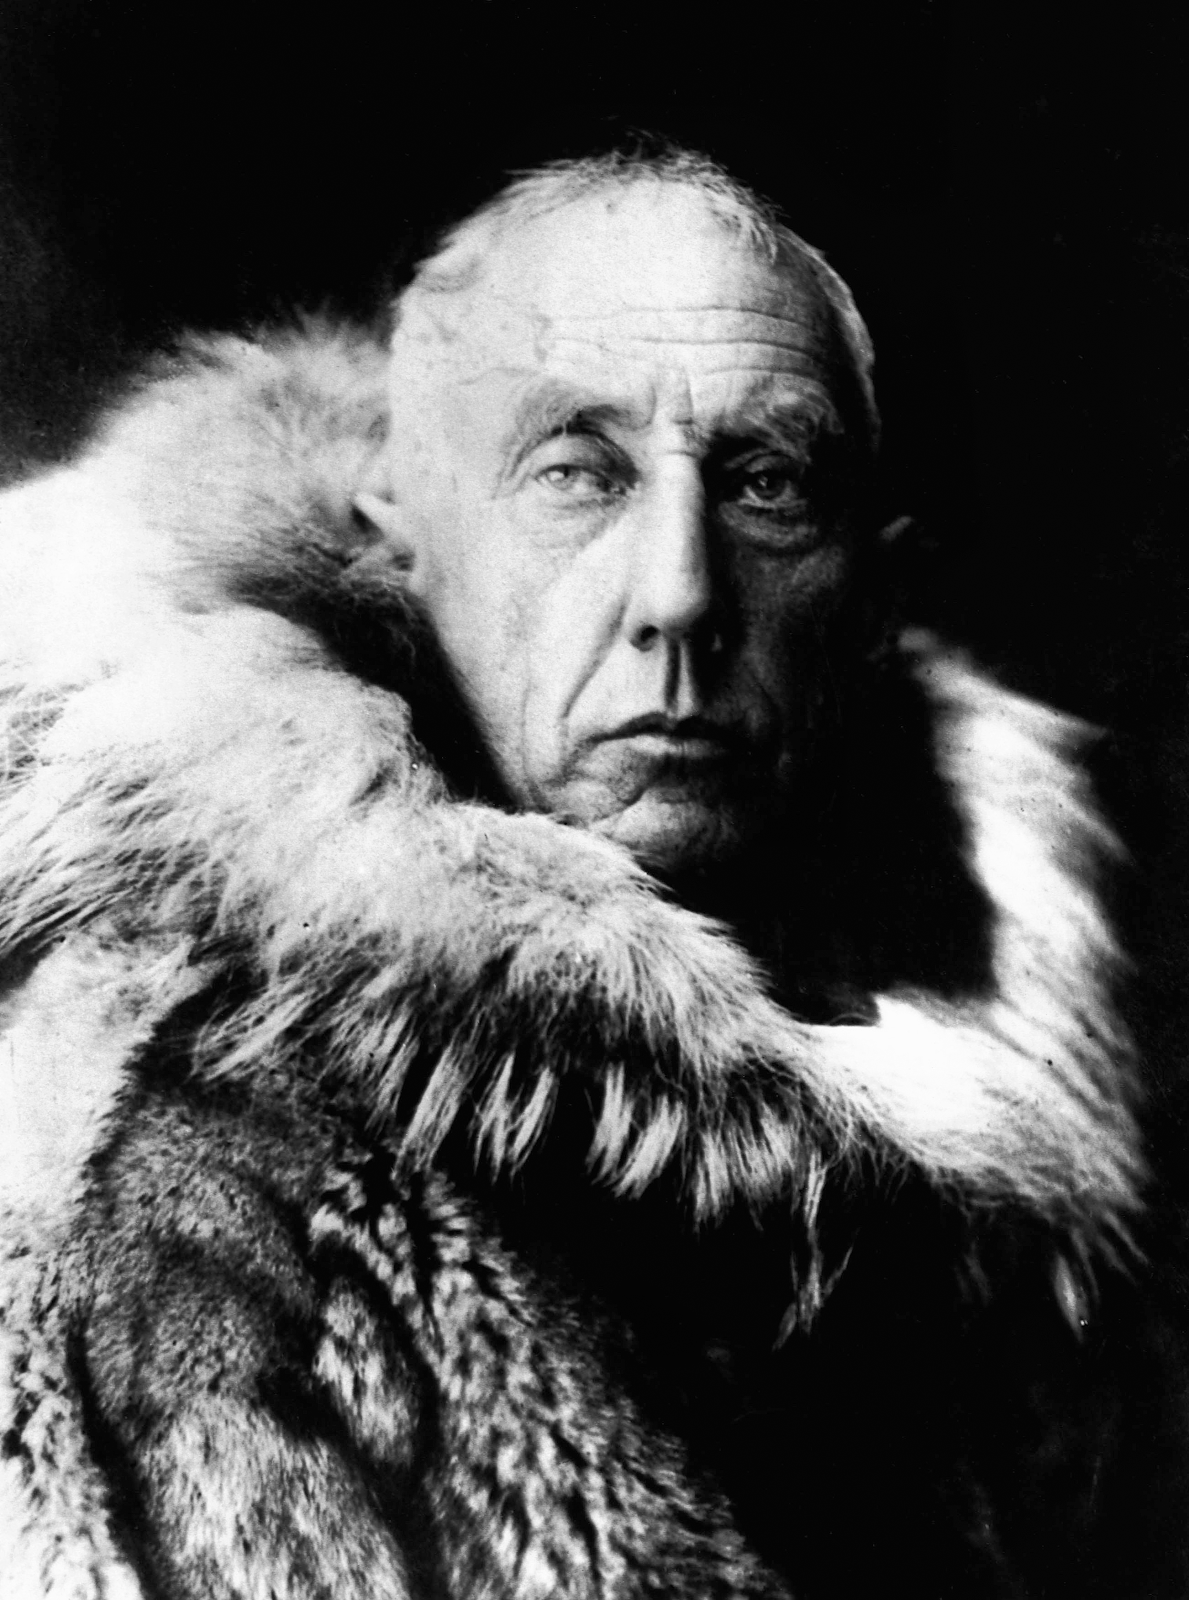 Roald Amundsen.